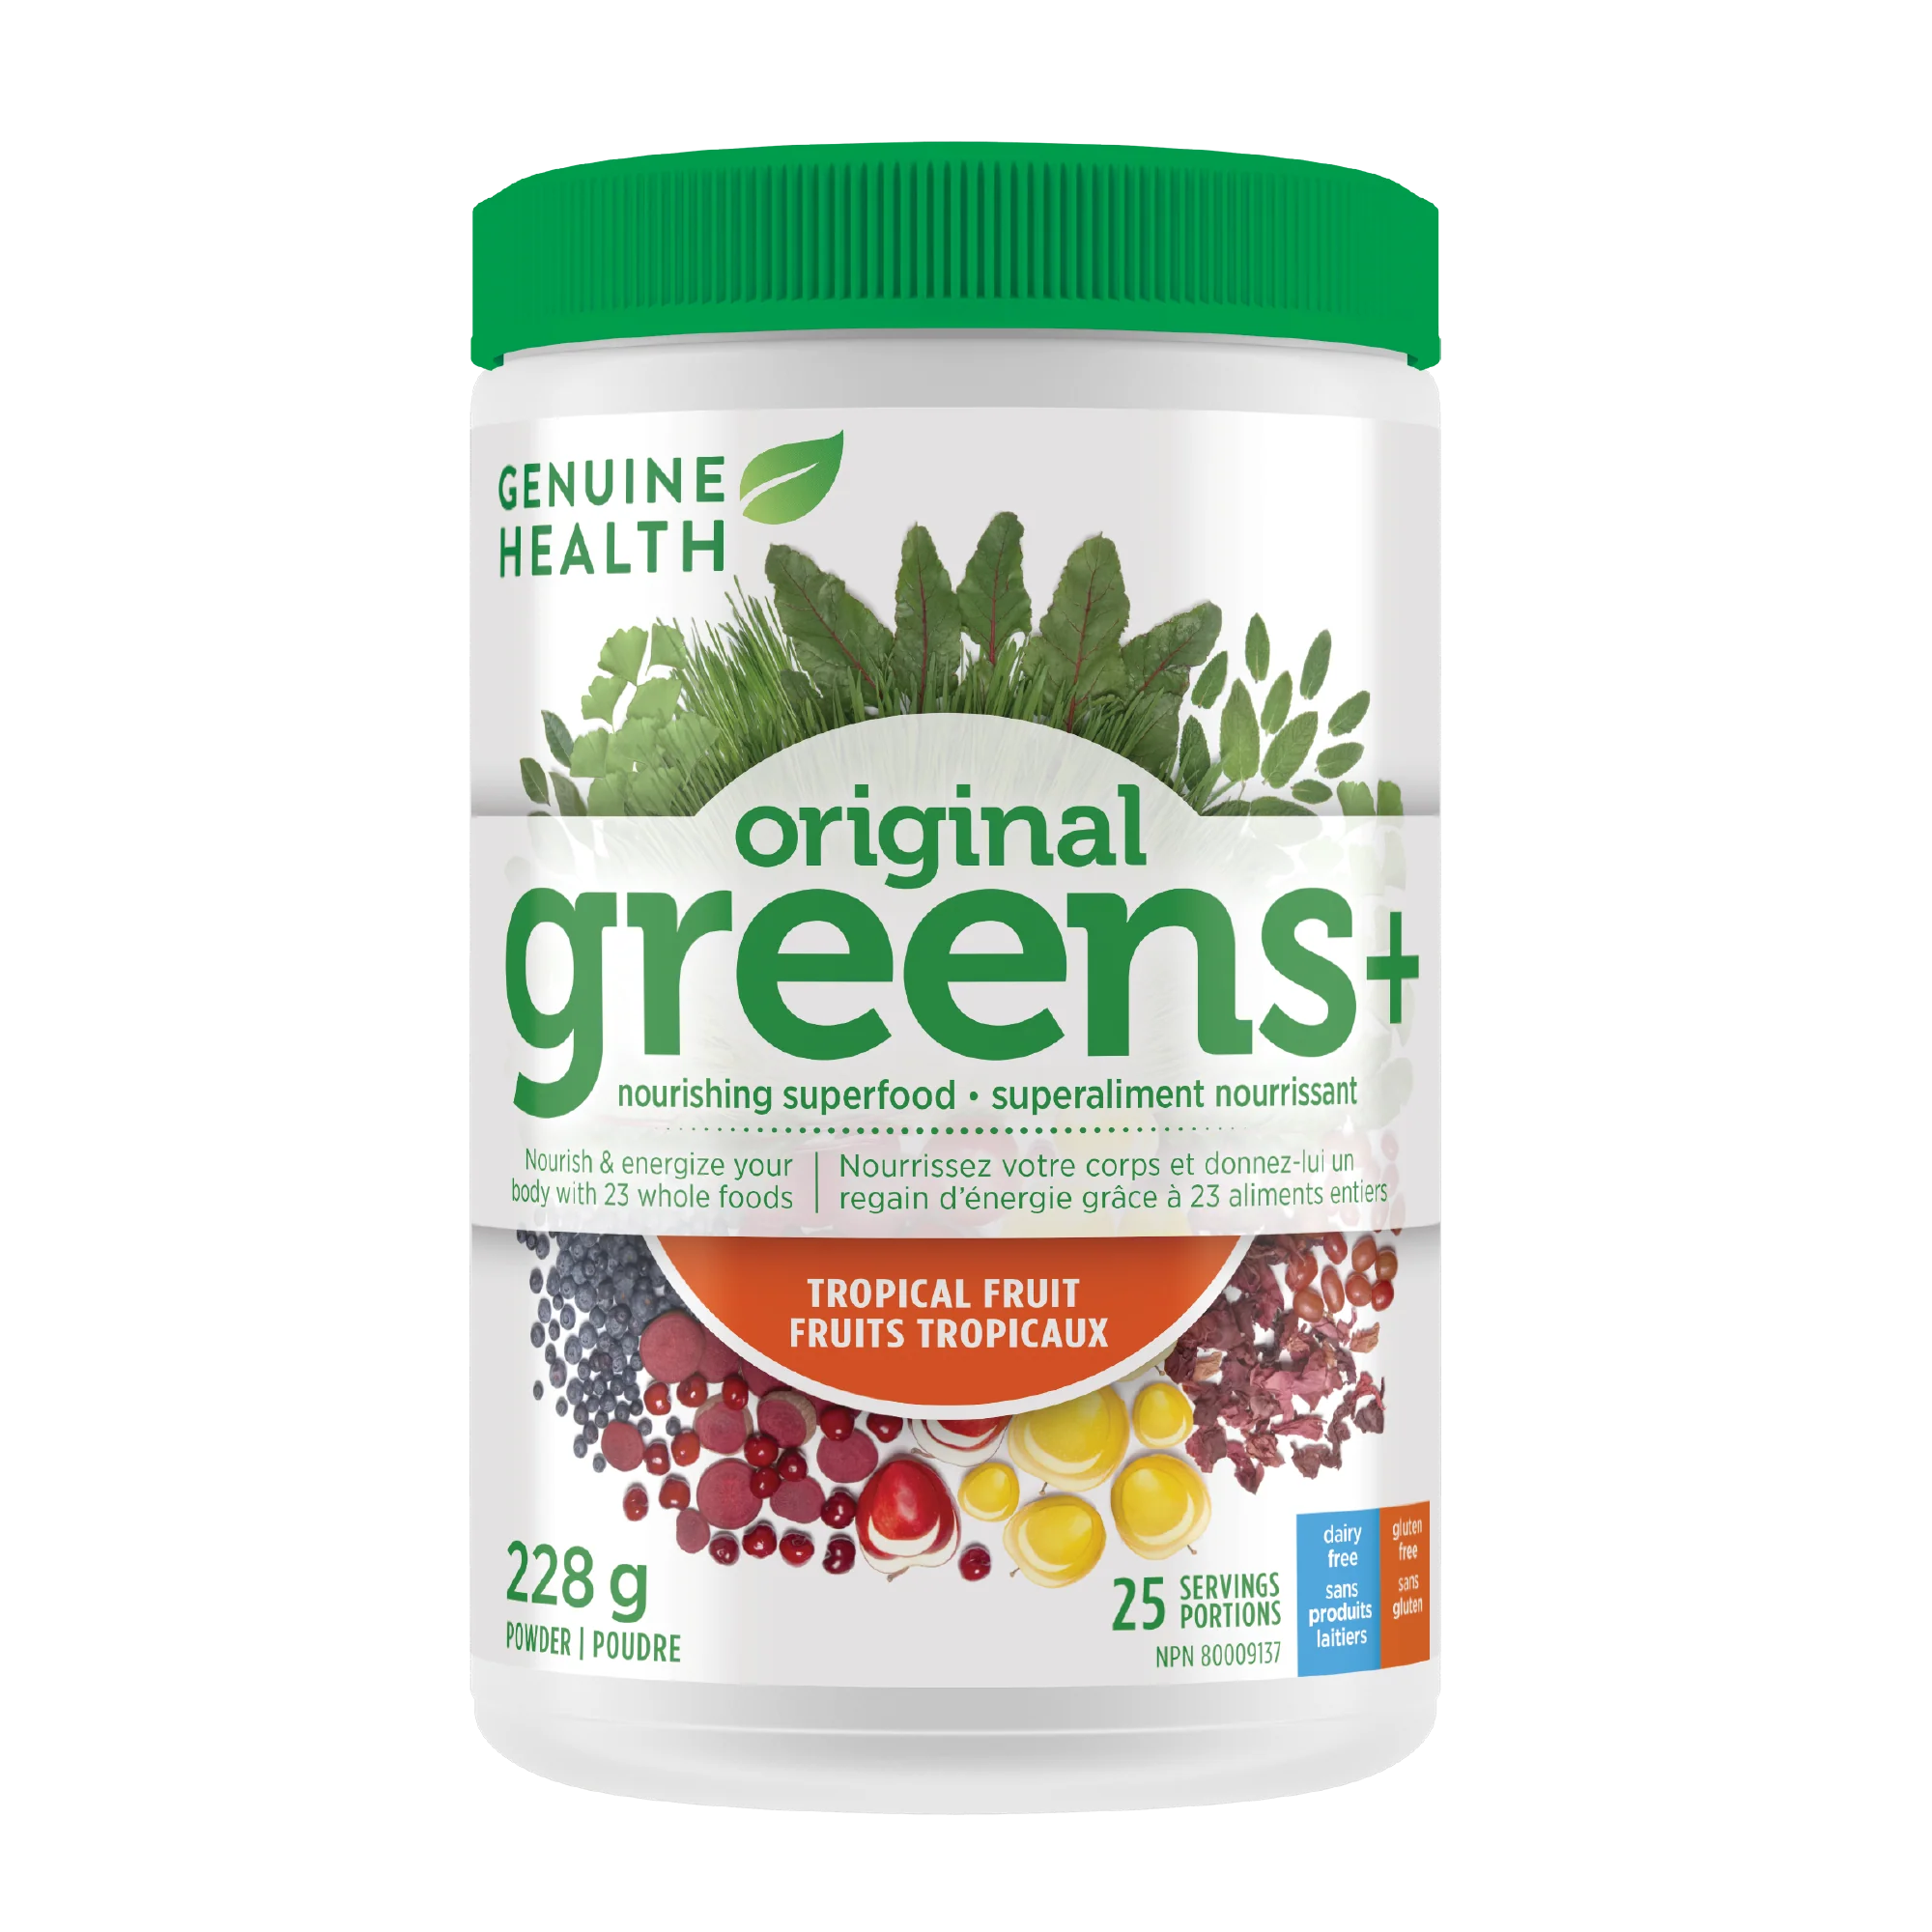 Genuine Health original greens+ tropical fruit (288 g)